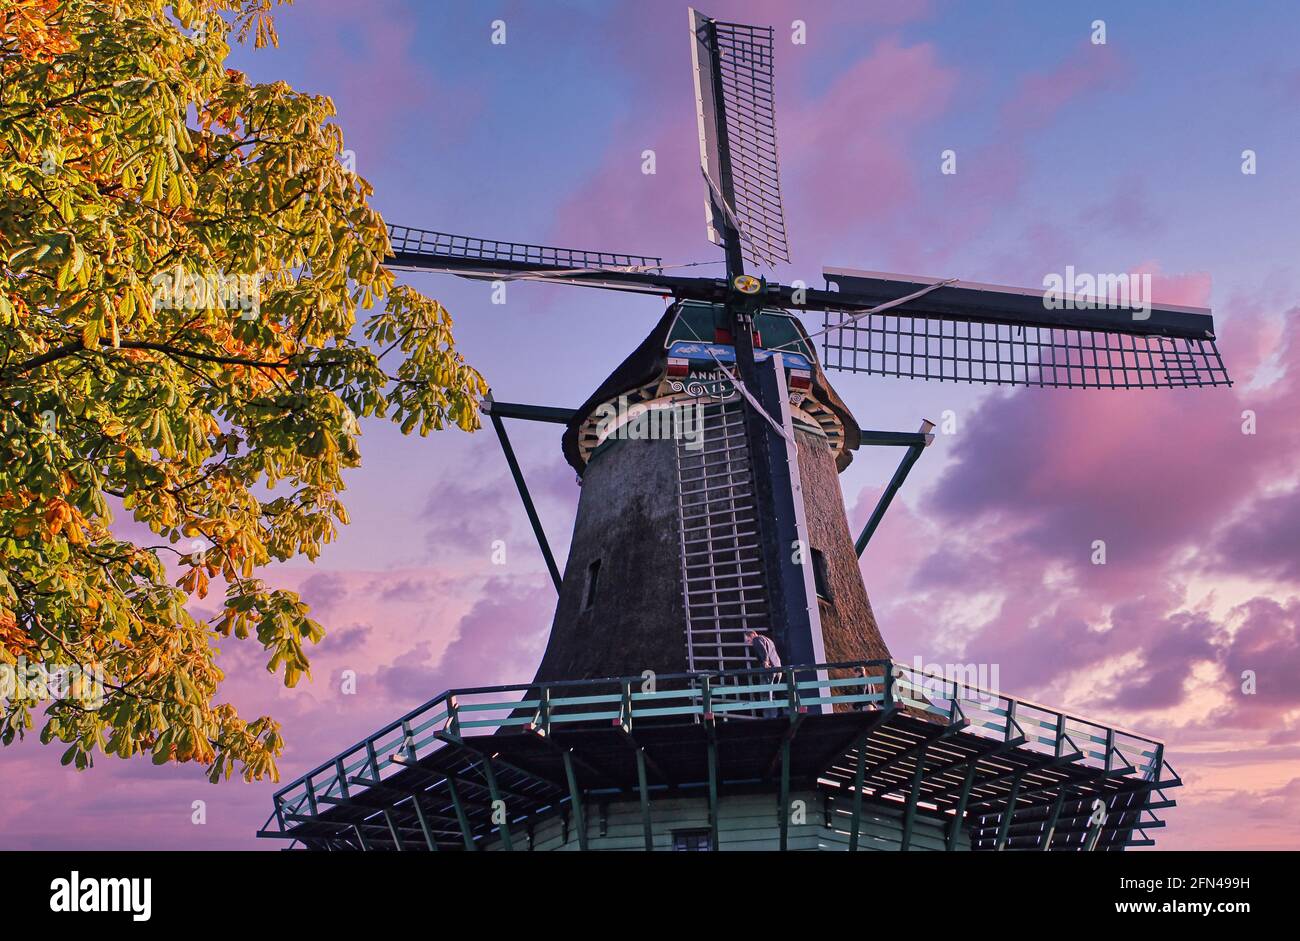 Große Windmühle von unten gesehen während eines wunderschönen violetten Sonnenuntergangs. Traditionelle niederländische Windmühle in den Niederlanden. Stockfoto